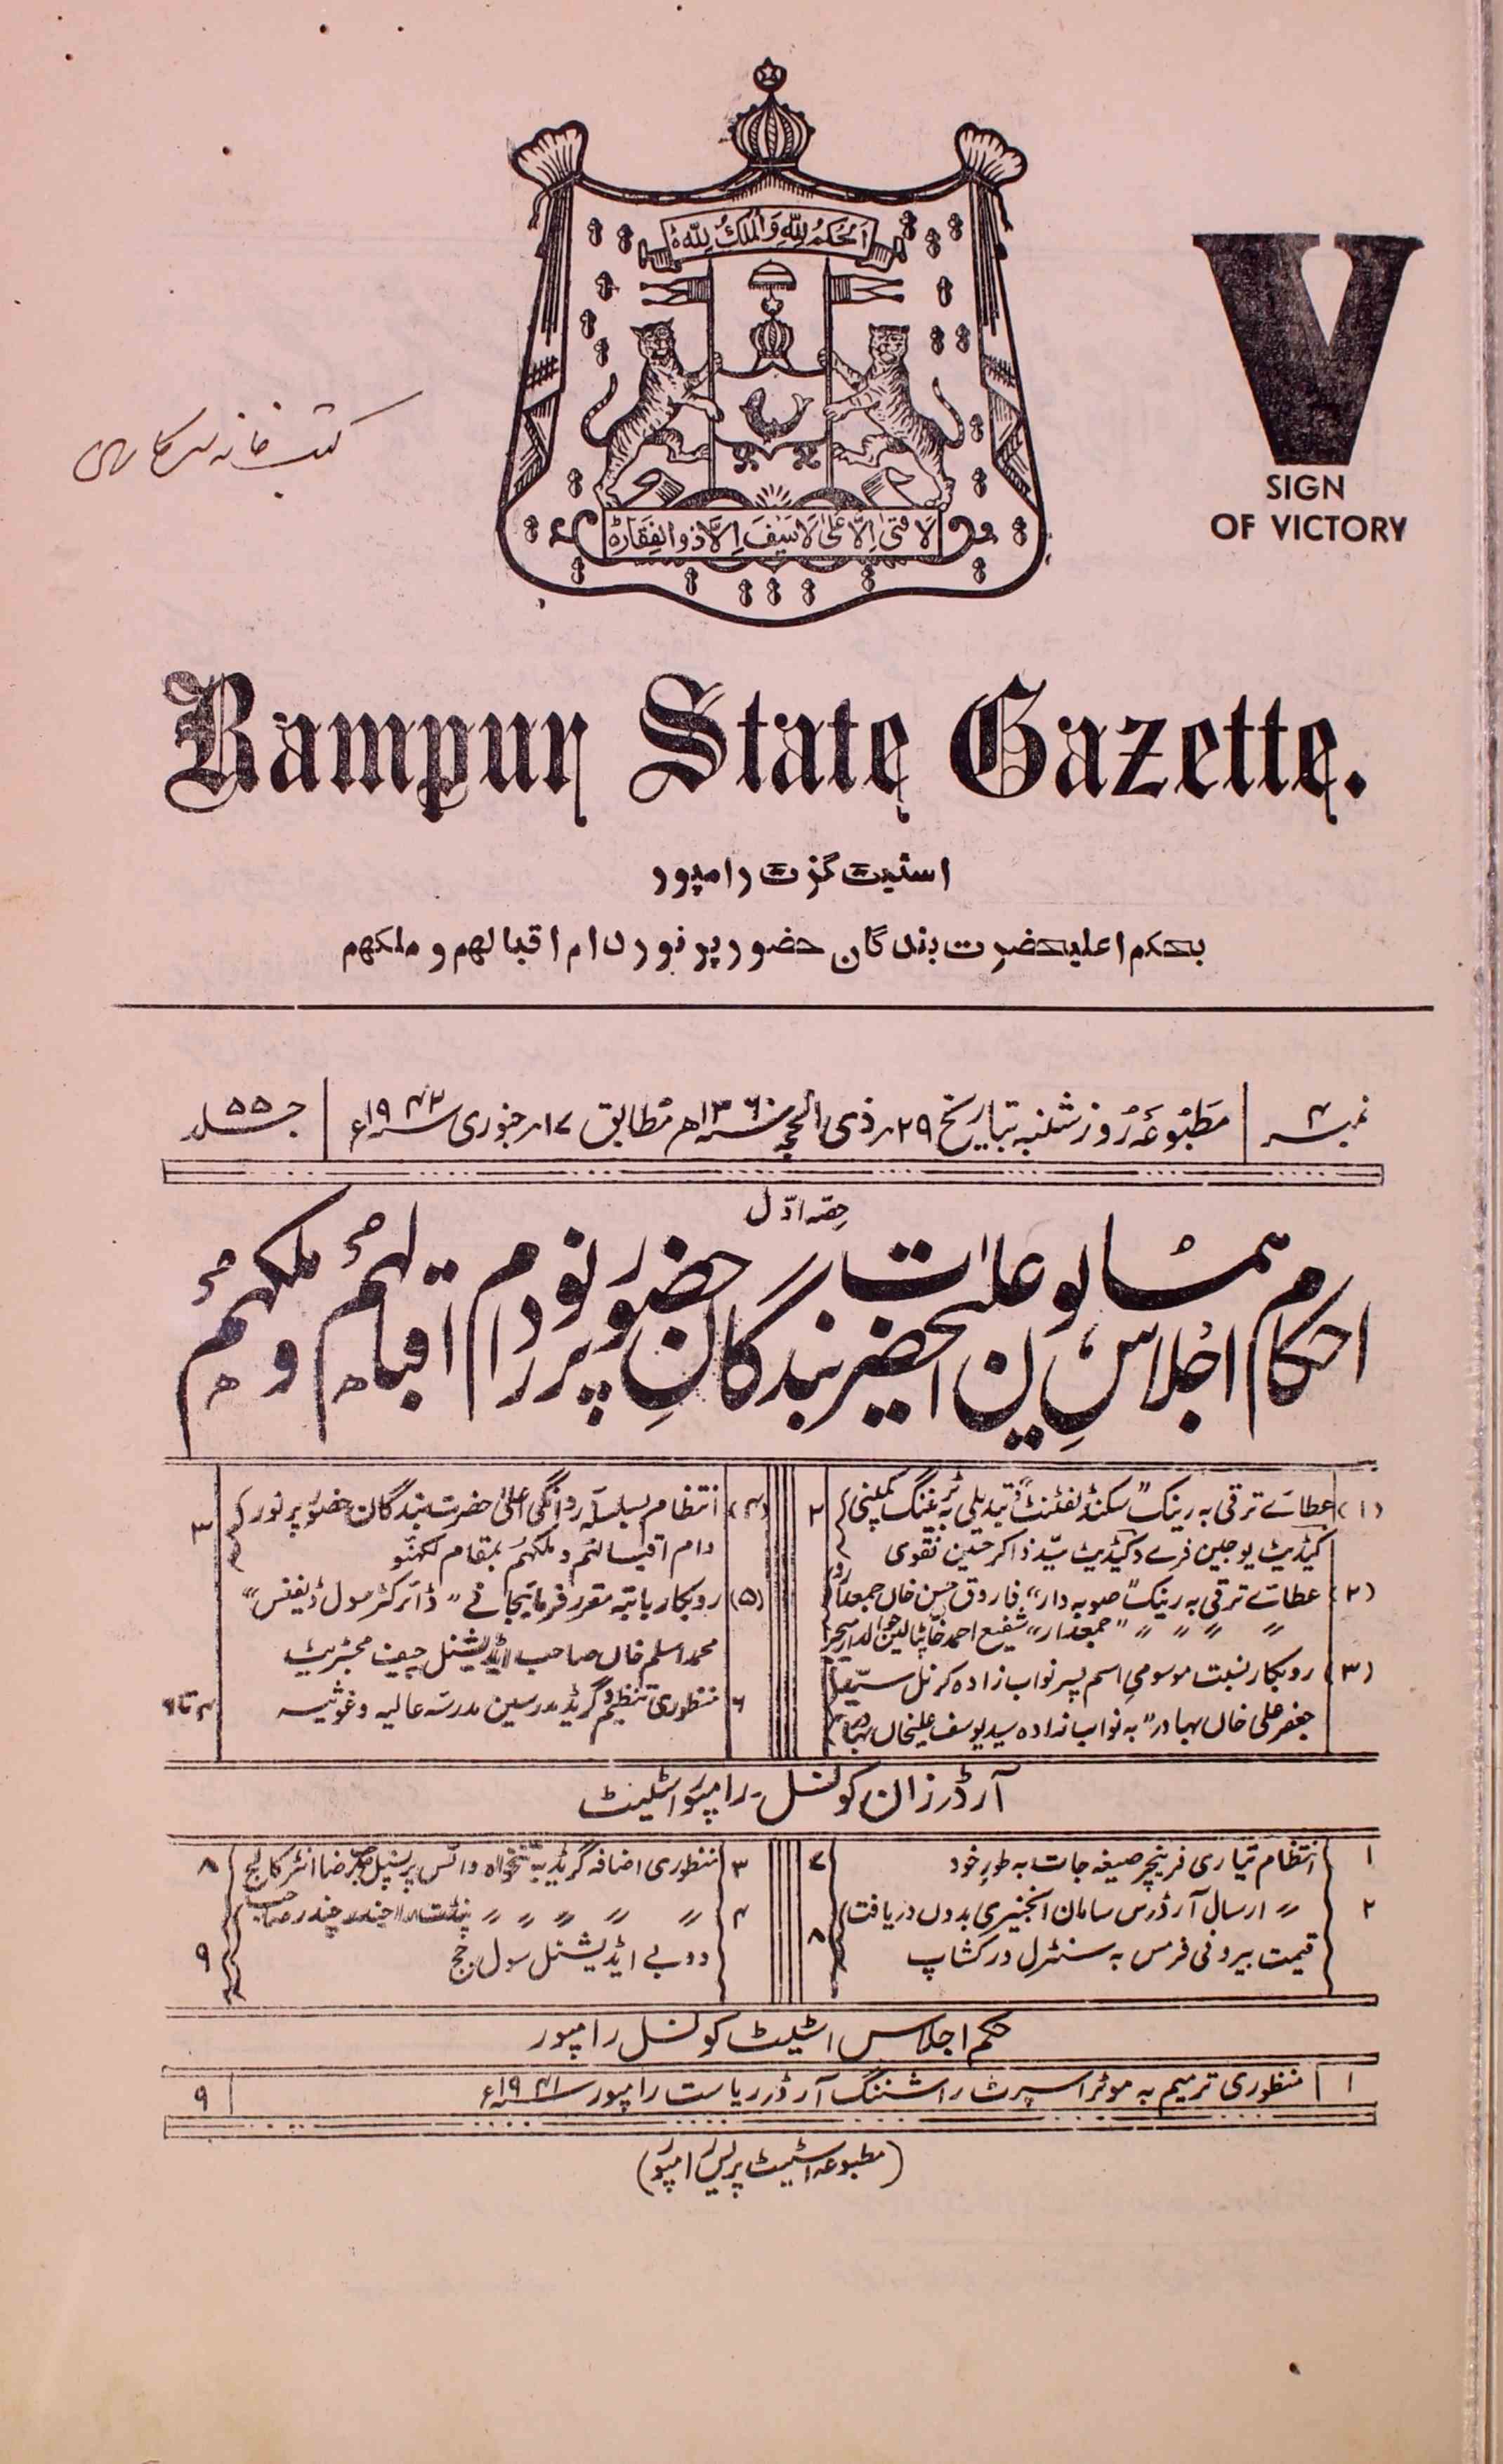 Rampur State Gazette-55 Number-4,1-Shumara Number-004